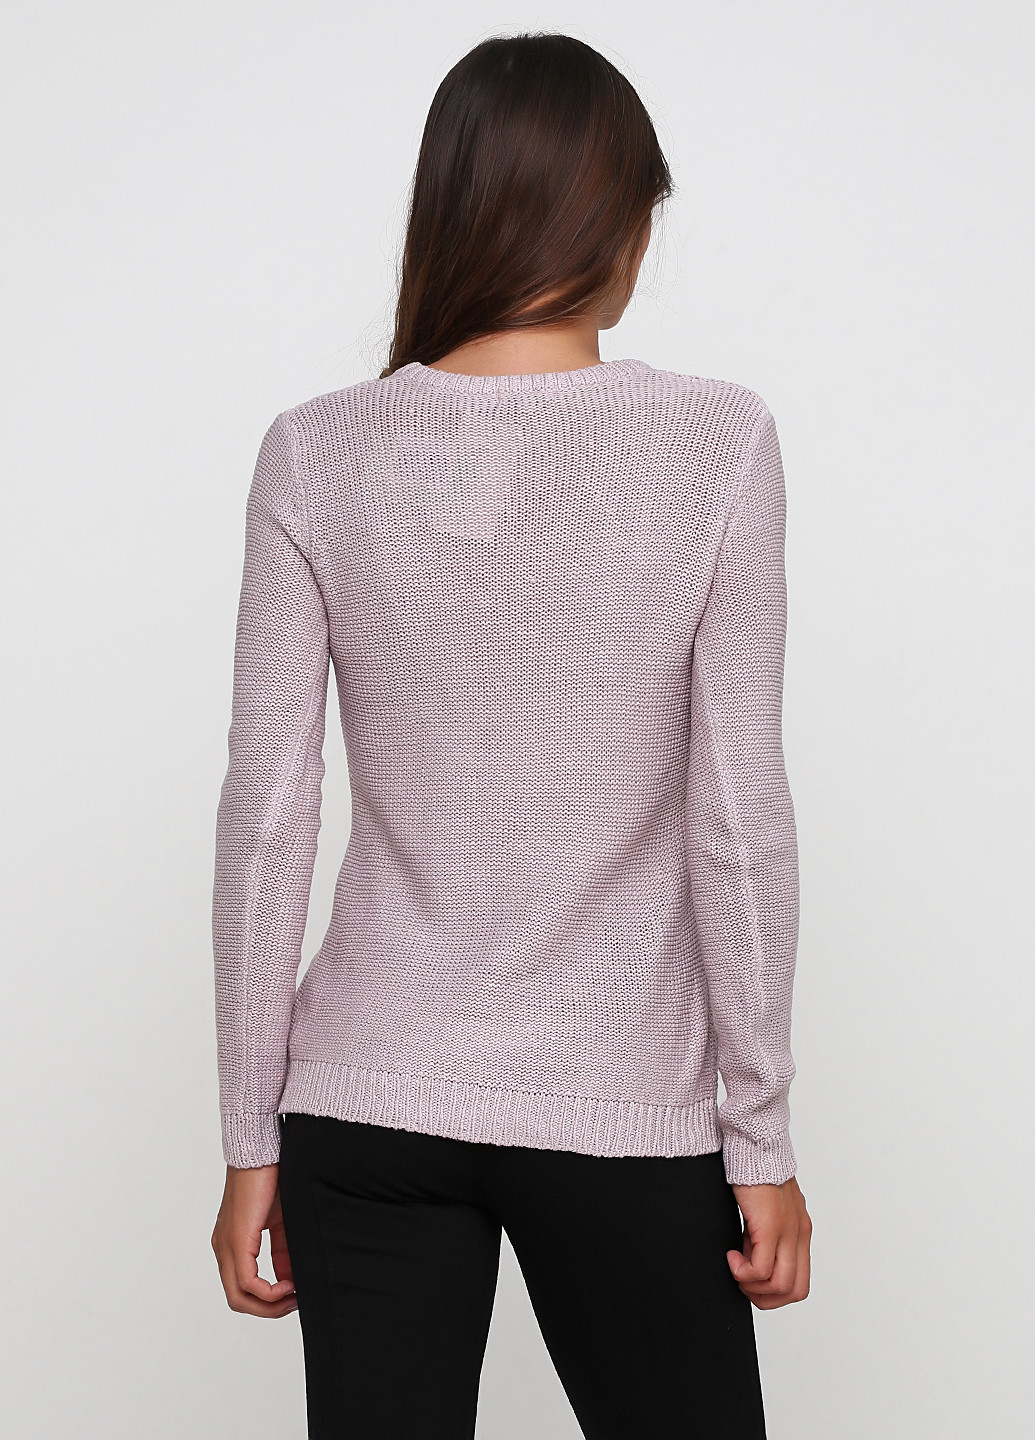 Розово-лиловый демисезонный пуловер пуловер Best Mountain